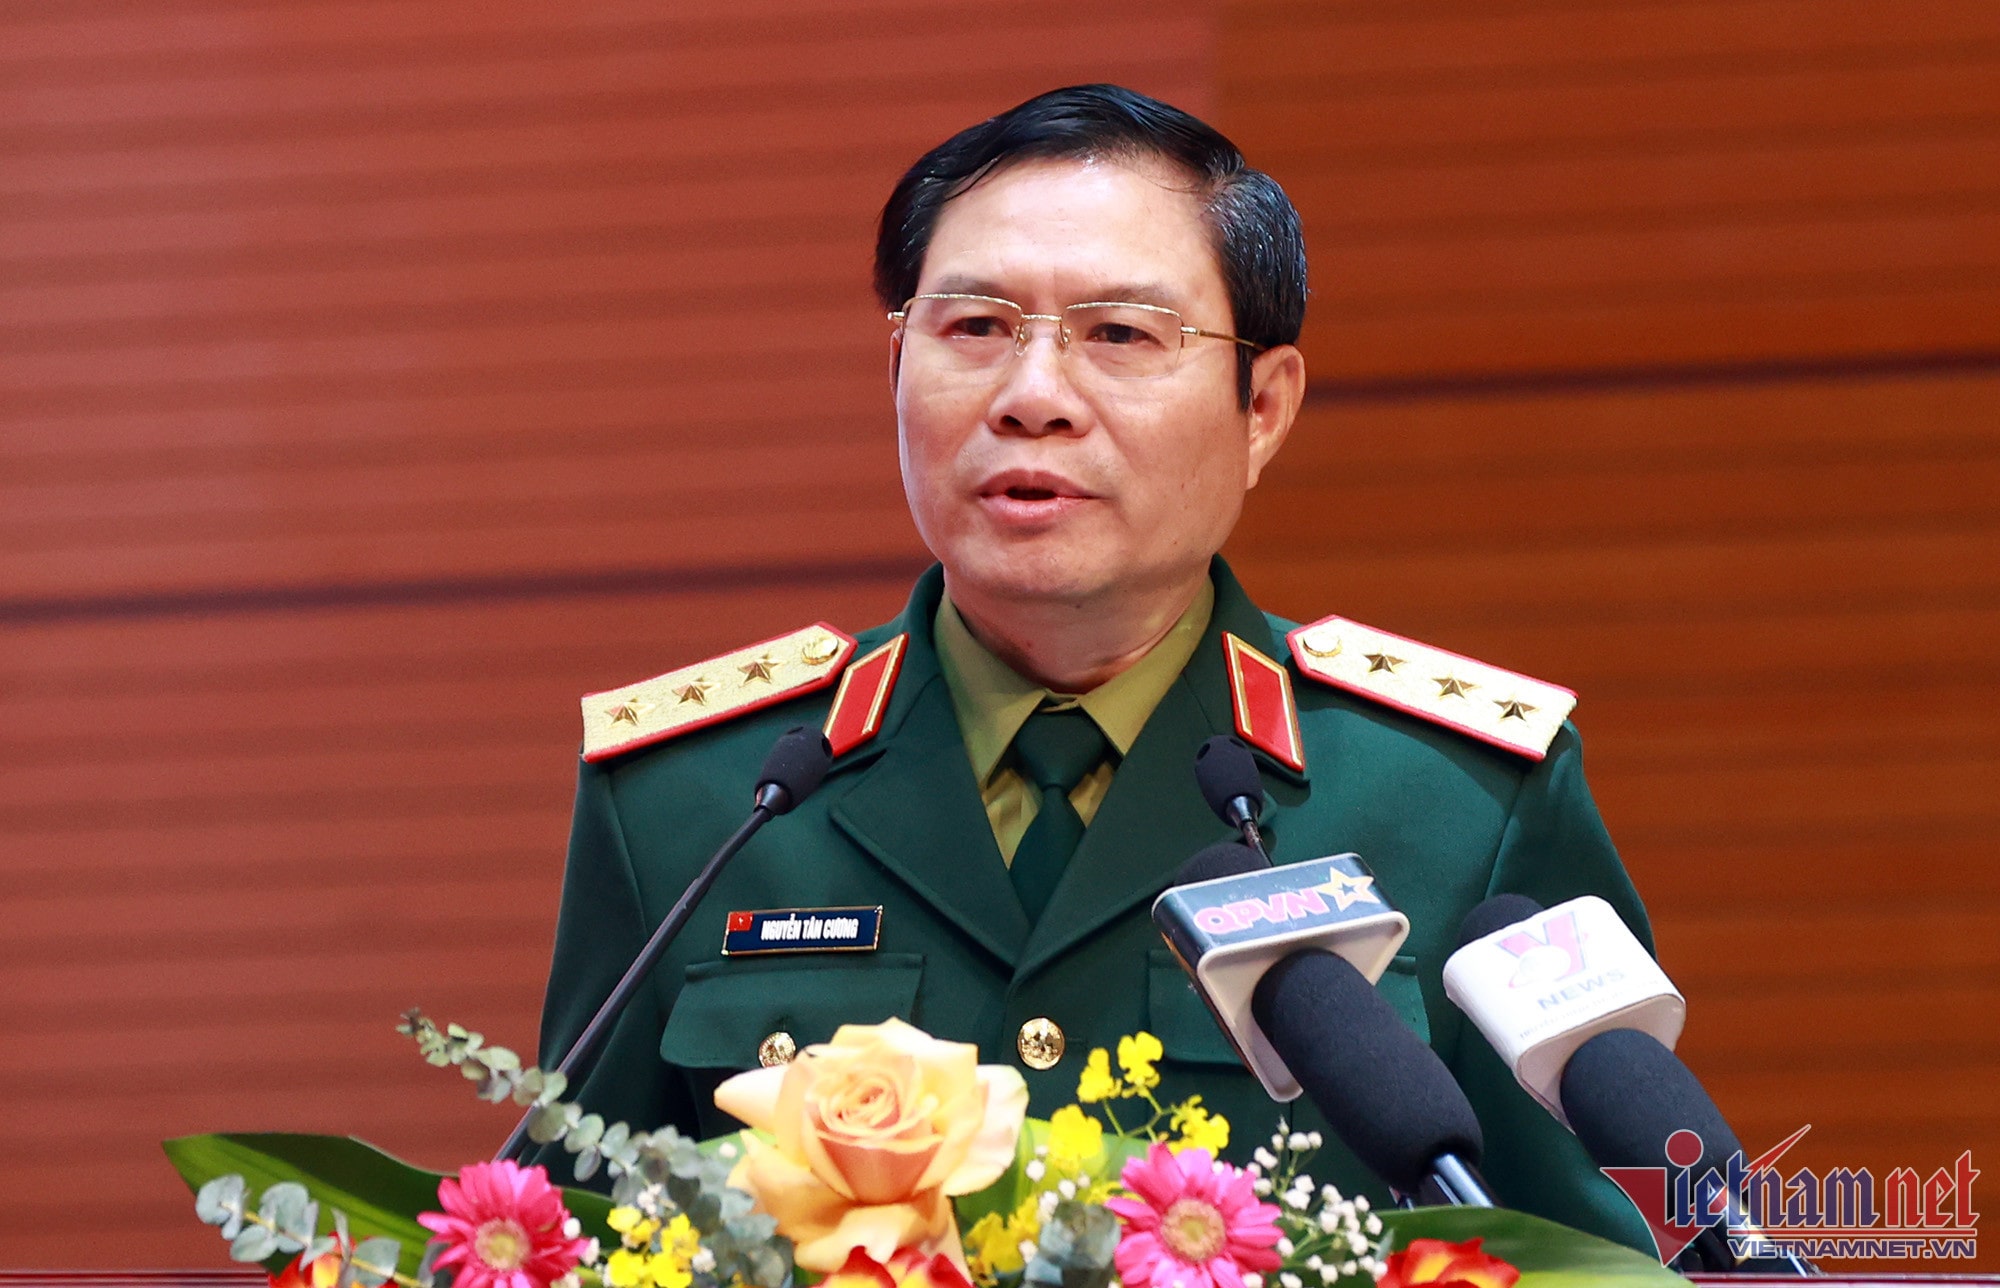 Thuong tuong Nguyen Tan Cuong min - Điều chưa từng có tiền lệ khi Quân đội Việt Nam cứu hộ, cứu nạn tại Thổ Nhĩ Kỳ